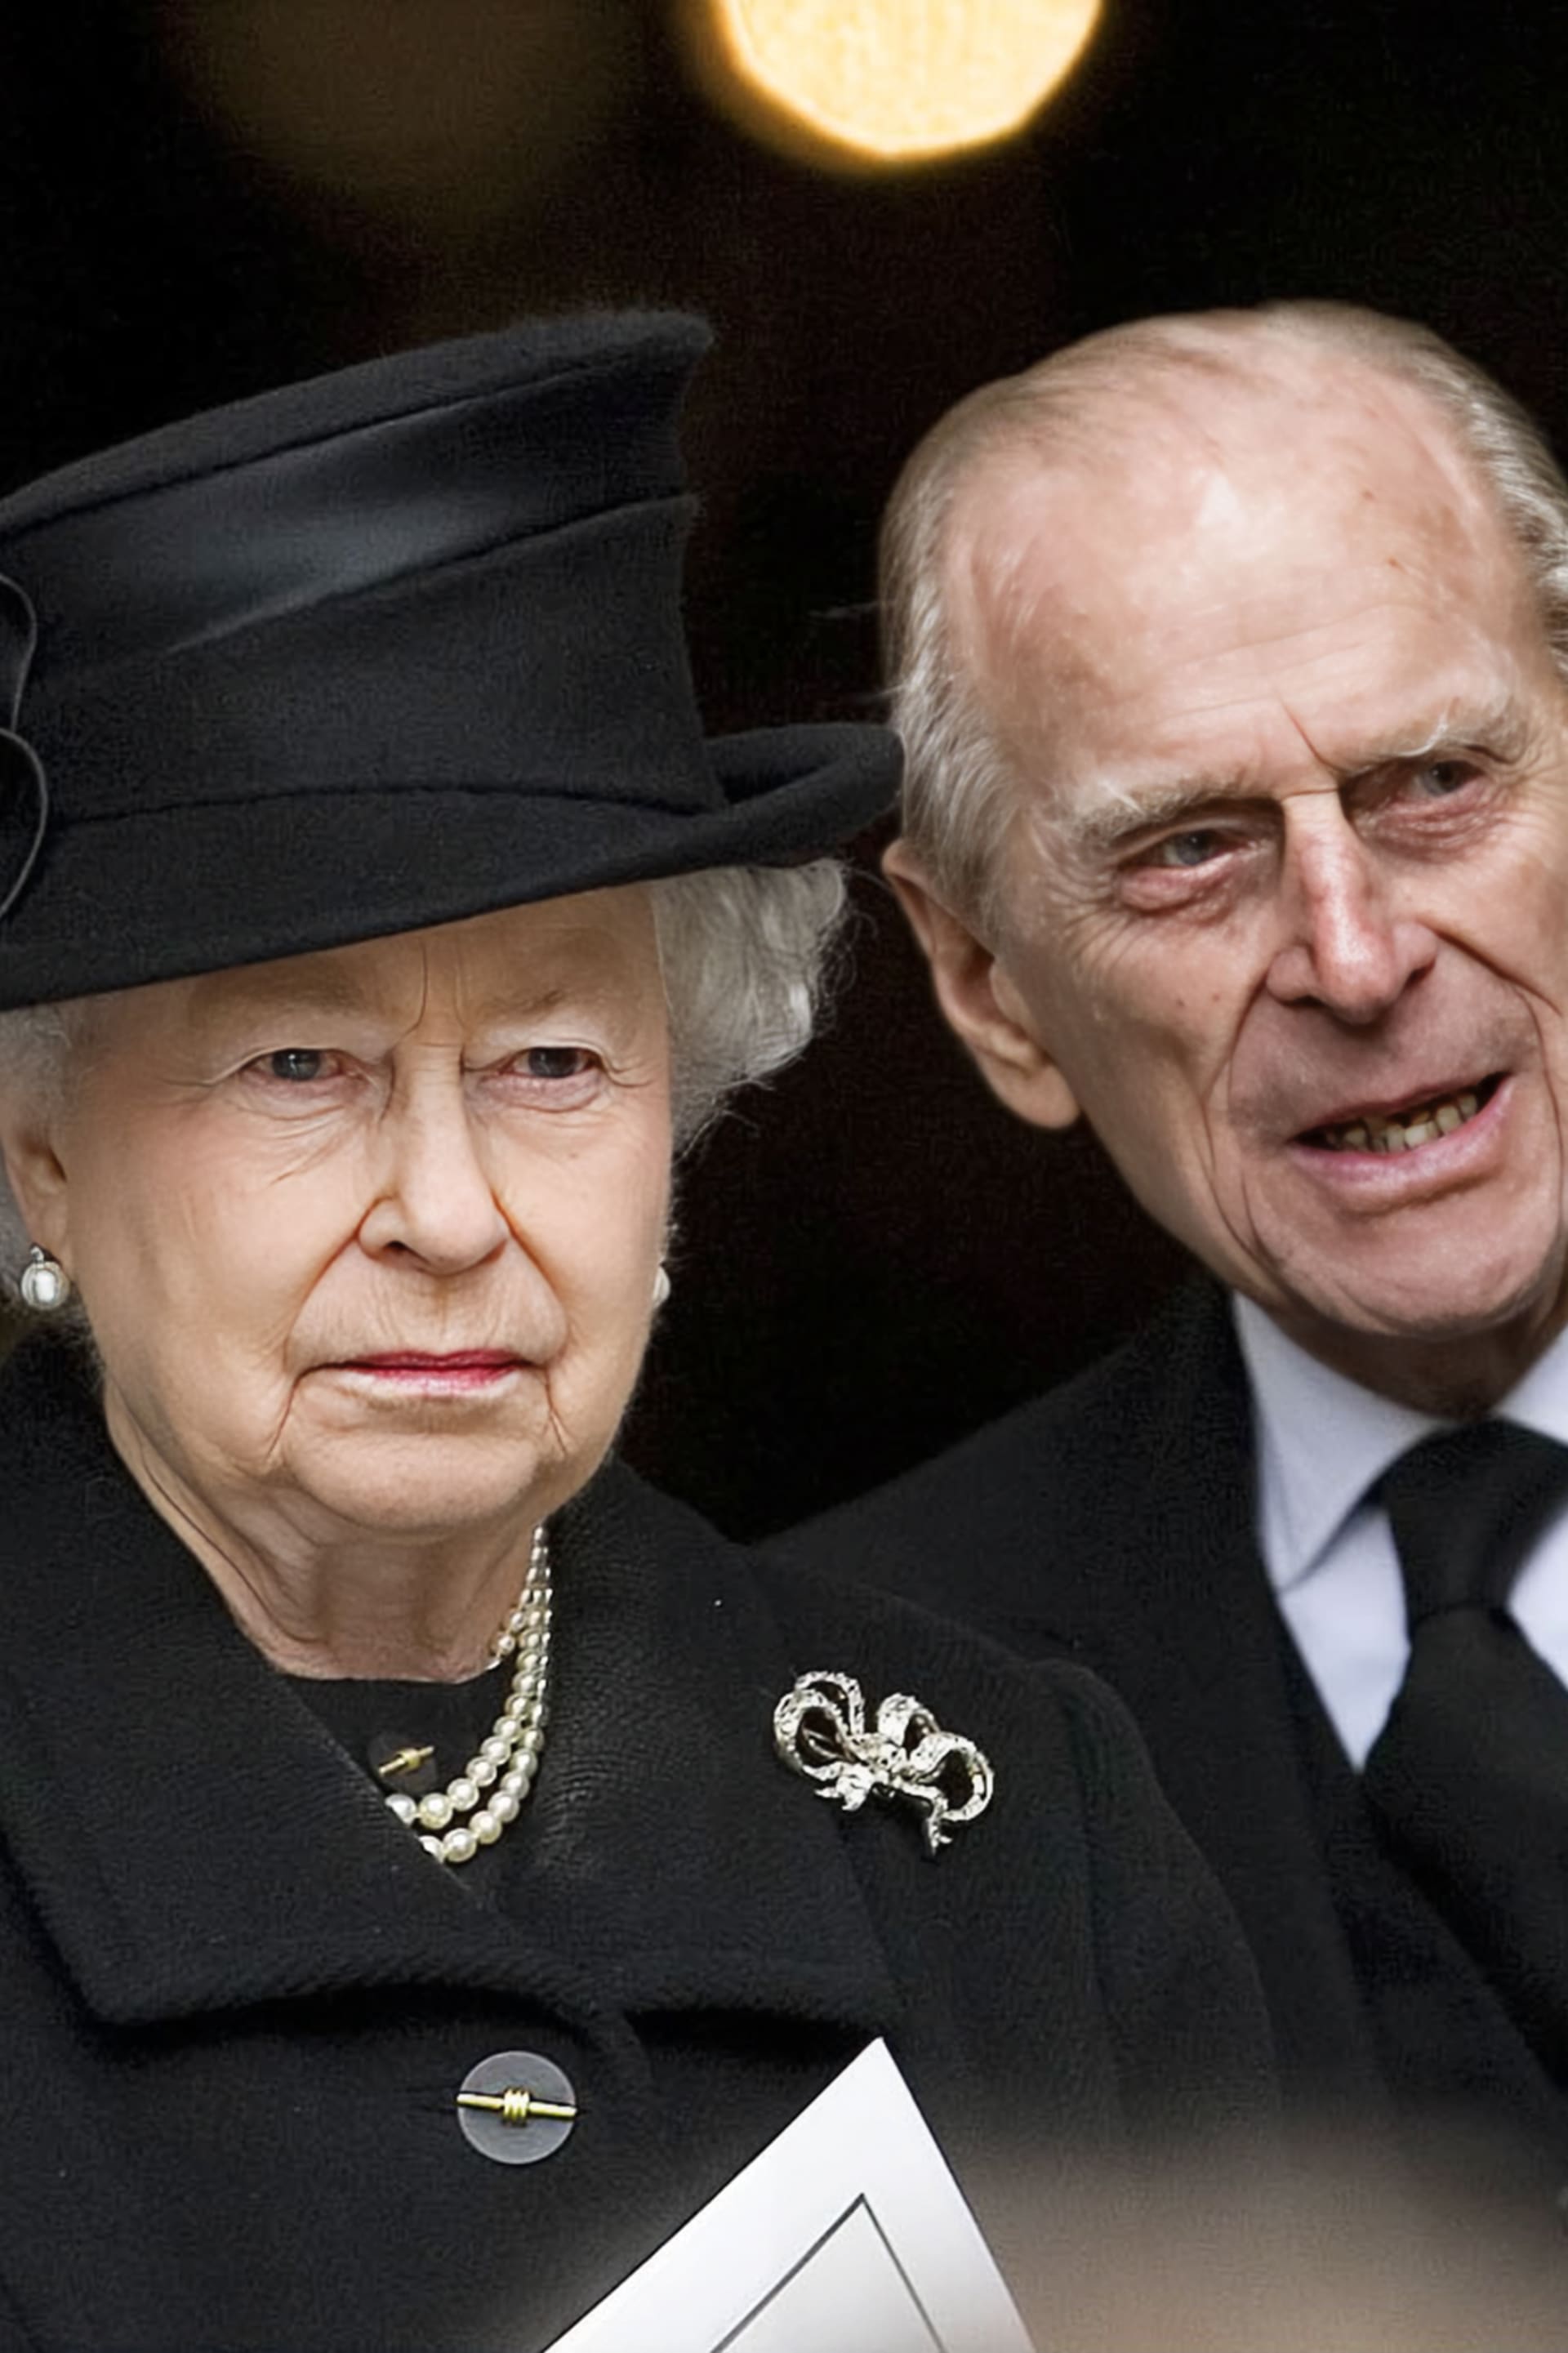 ...později ovšem královna, k překvapení nejbližšího okolí, udělila Margaret Thatcher Řád Za zásluhy. Rovněž se zúčastnila 80. narozenin bývalé premiérky a v roce 2013 také jejího pohřbu.